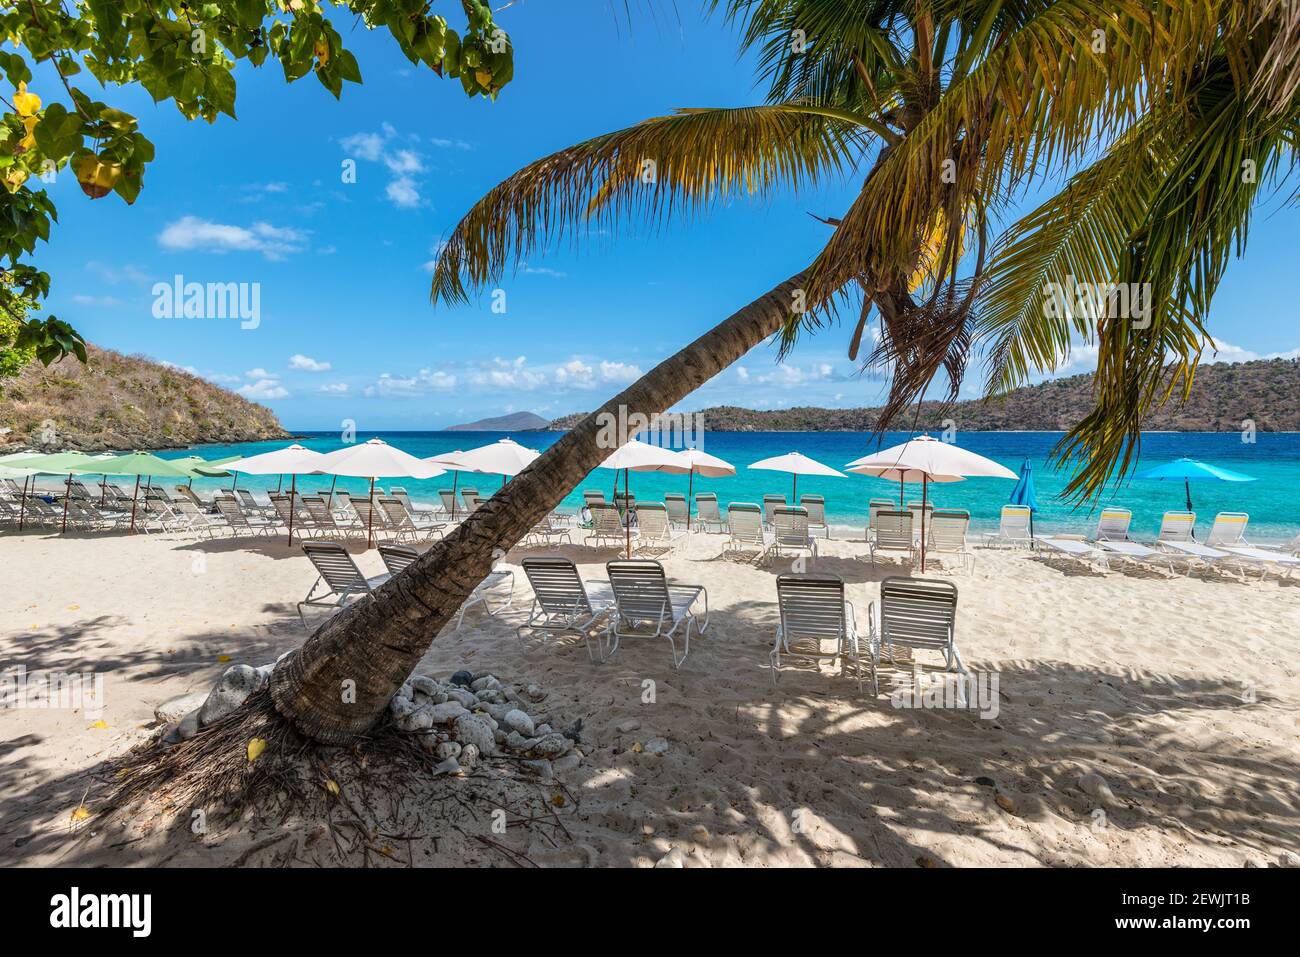 Tumbonas para grupos para relajarse y tomar el sol bajo sombrillas y palmeras en una playa de arena del mar caribe. Concepto de viaje de vacaciones de verano. Foto de stock